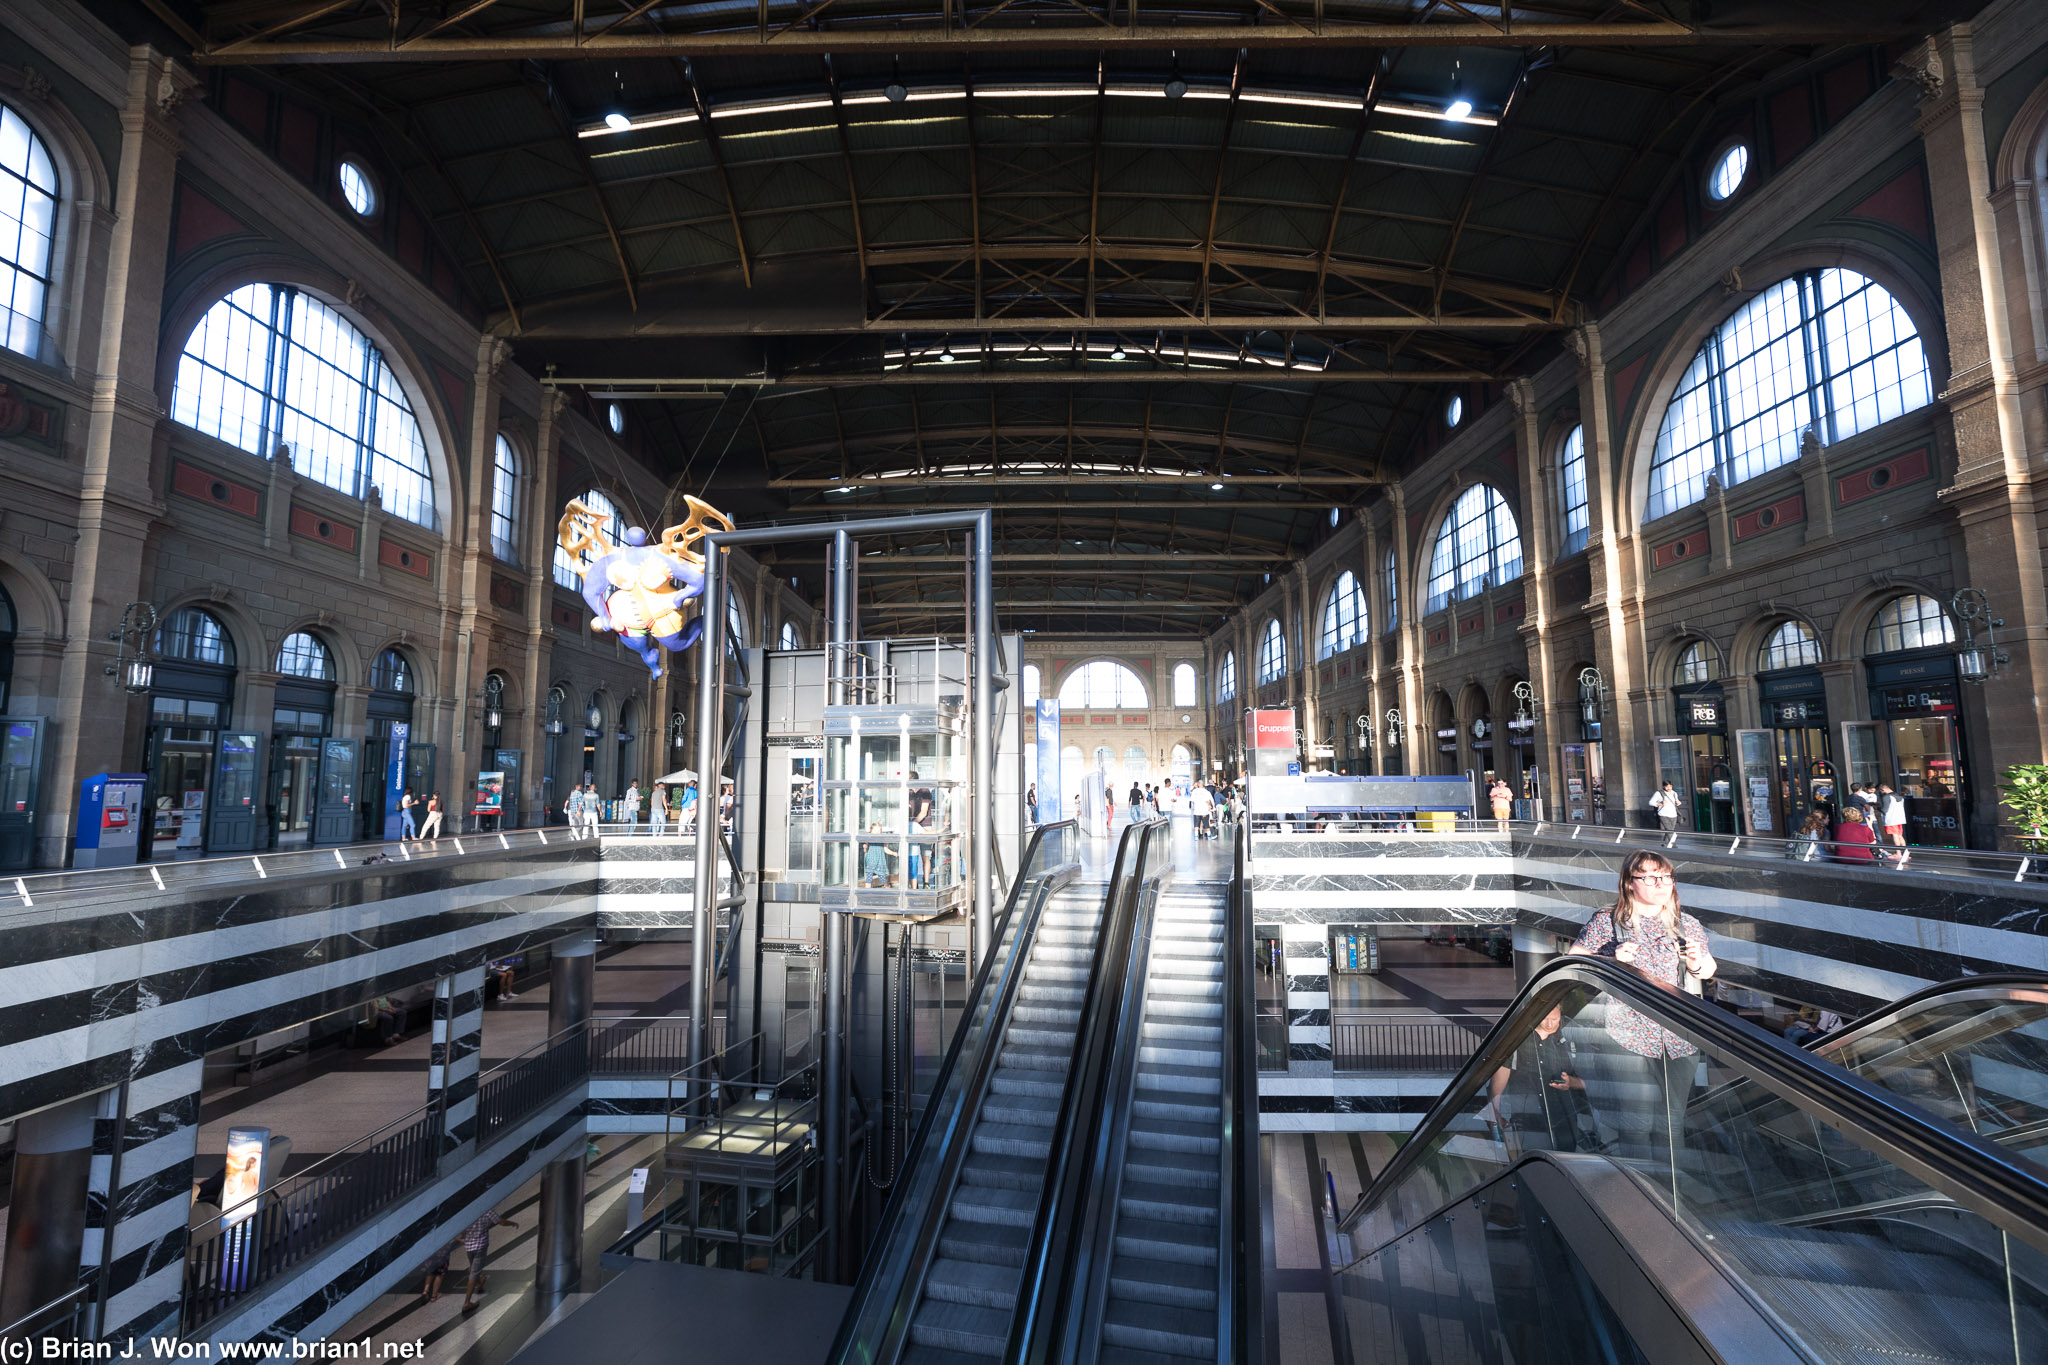 Inside the Hauptbahnhof.